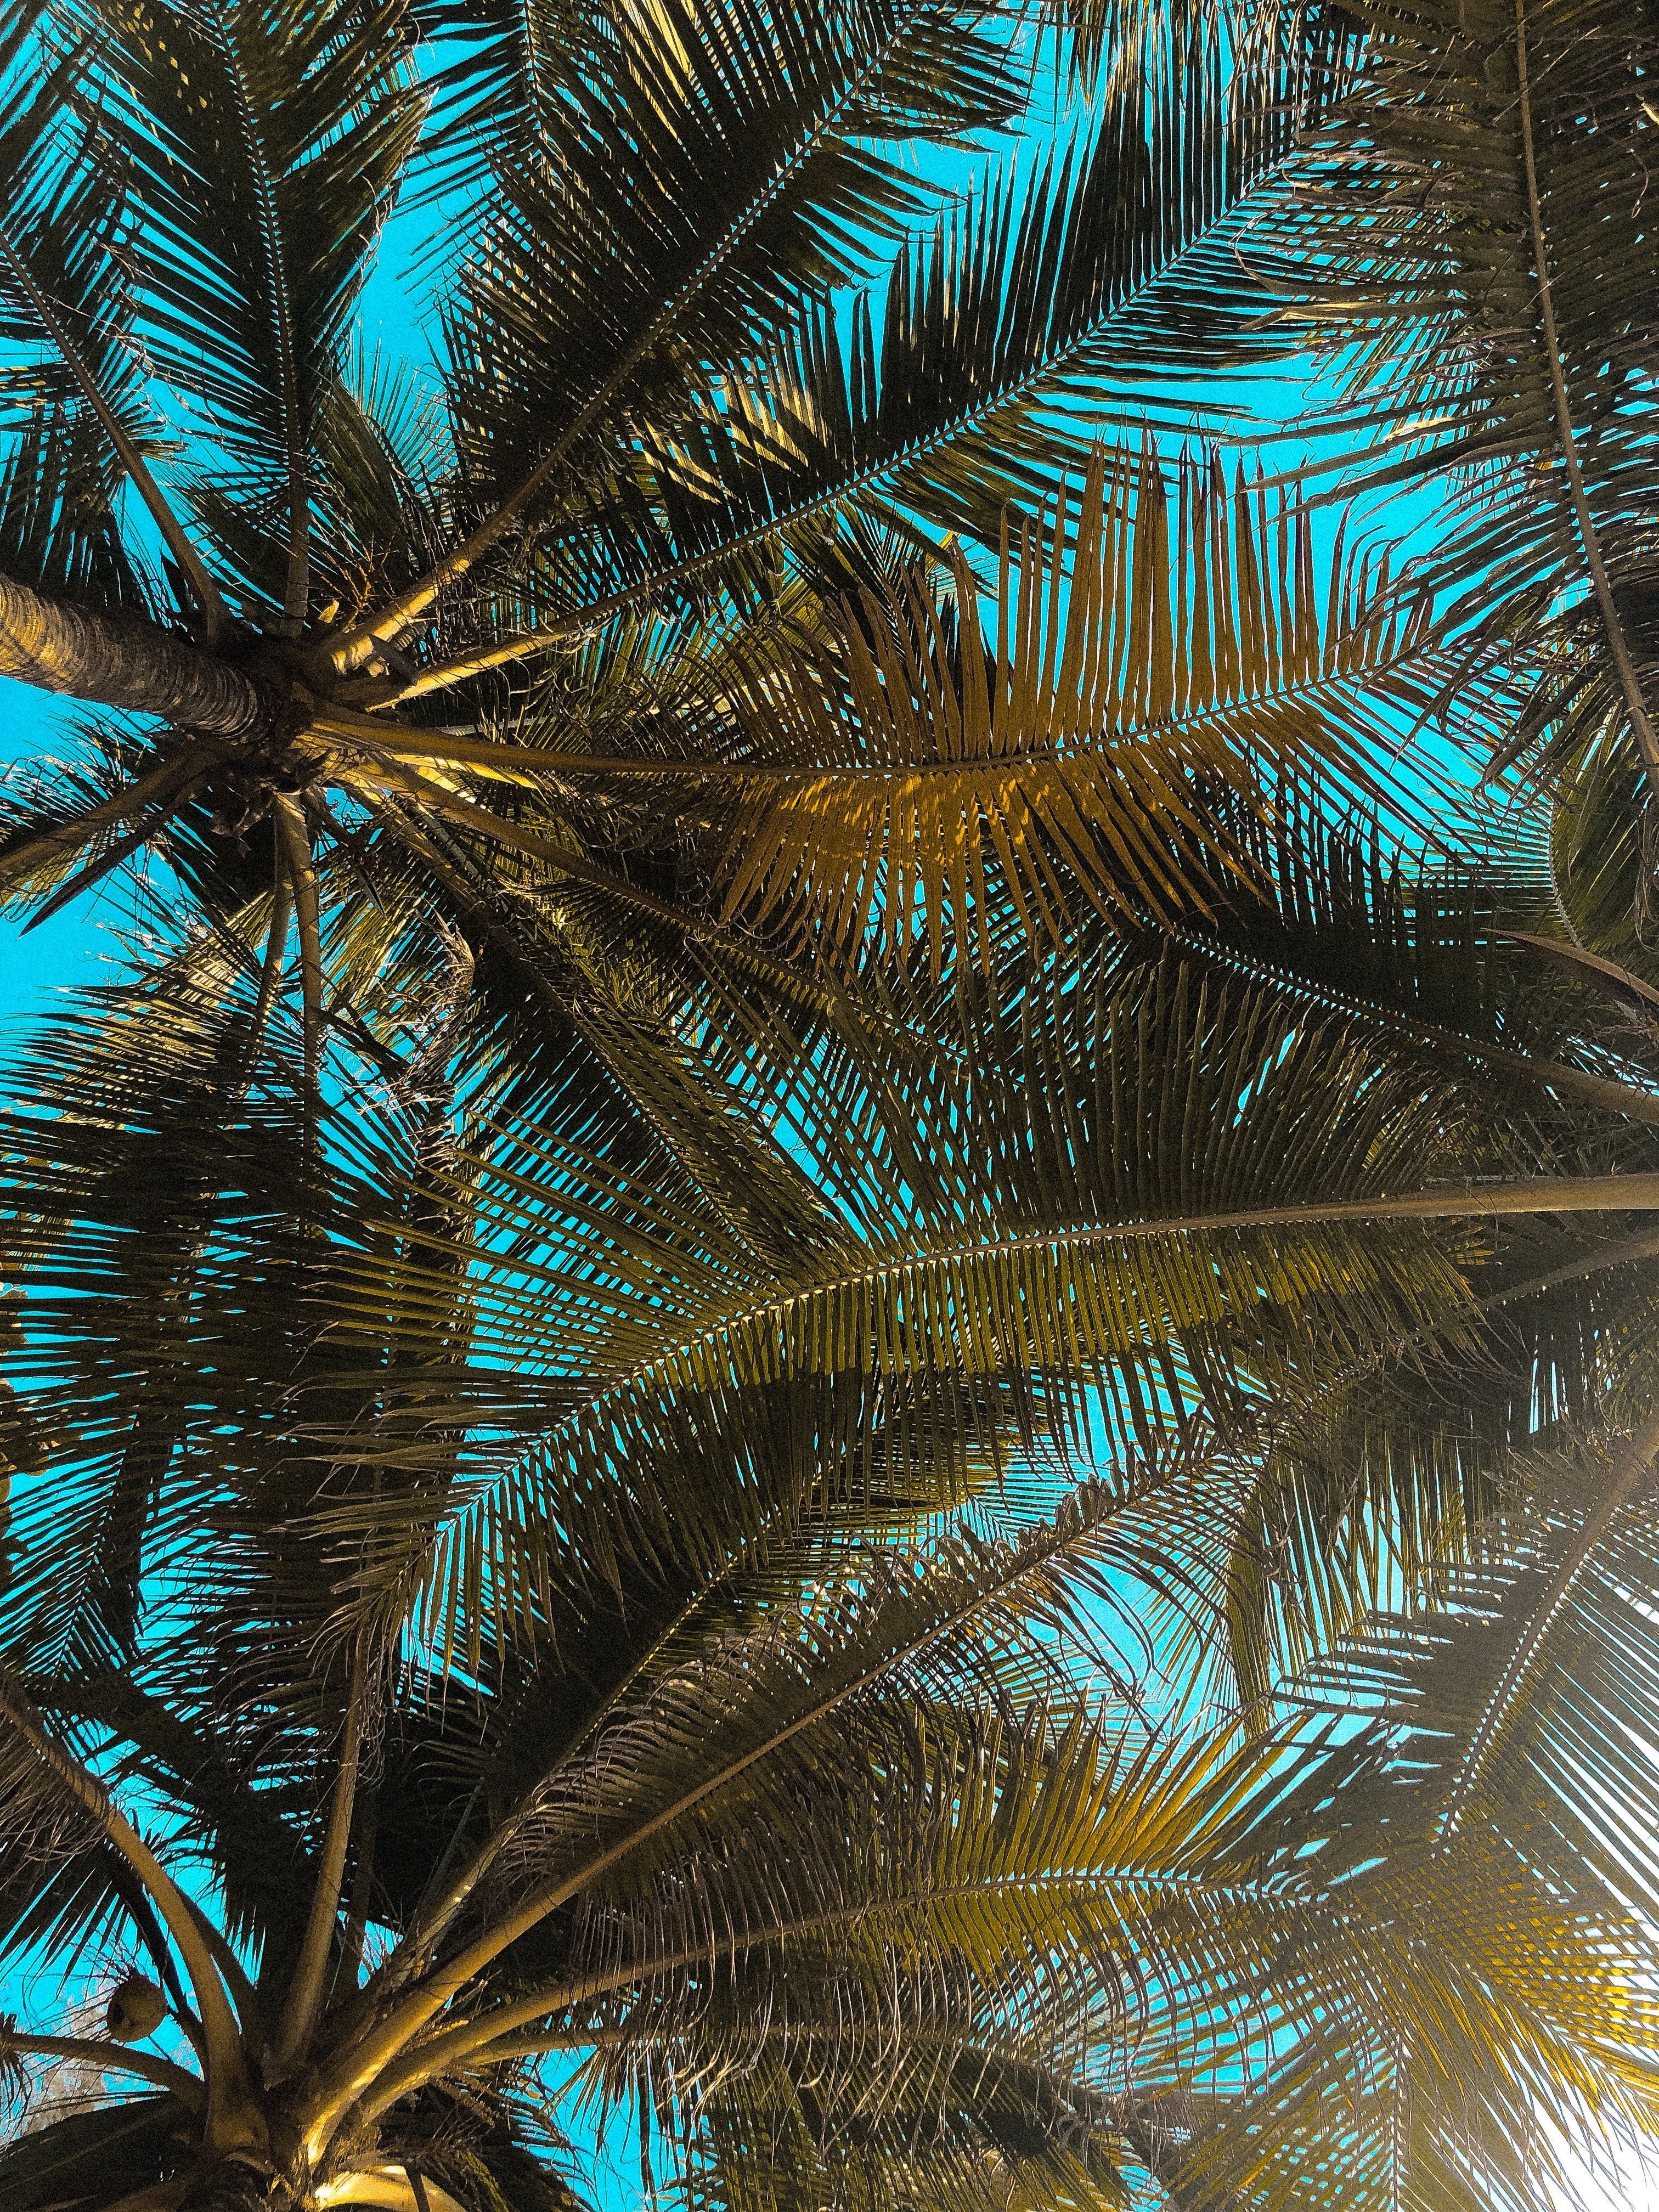 Palm trees and a blue sky - Palm tree, coconut